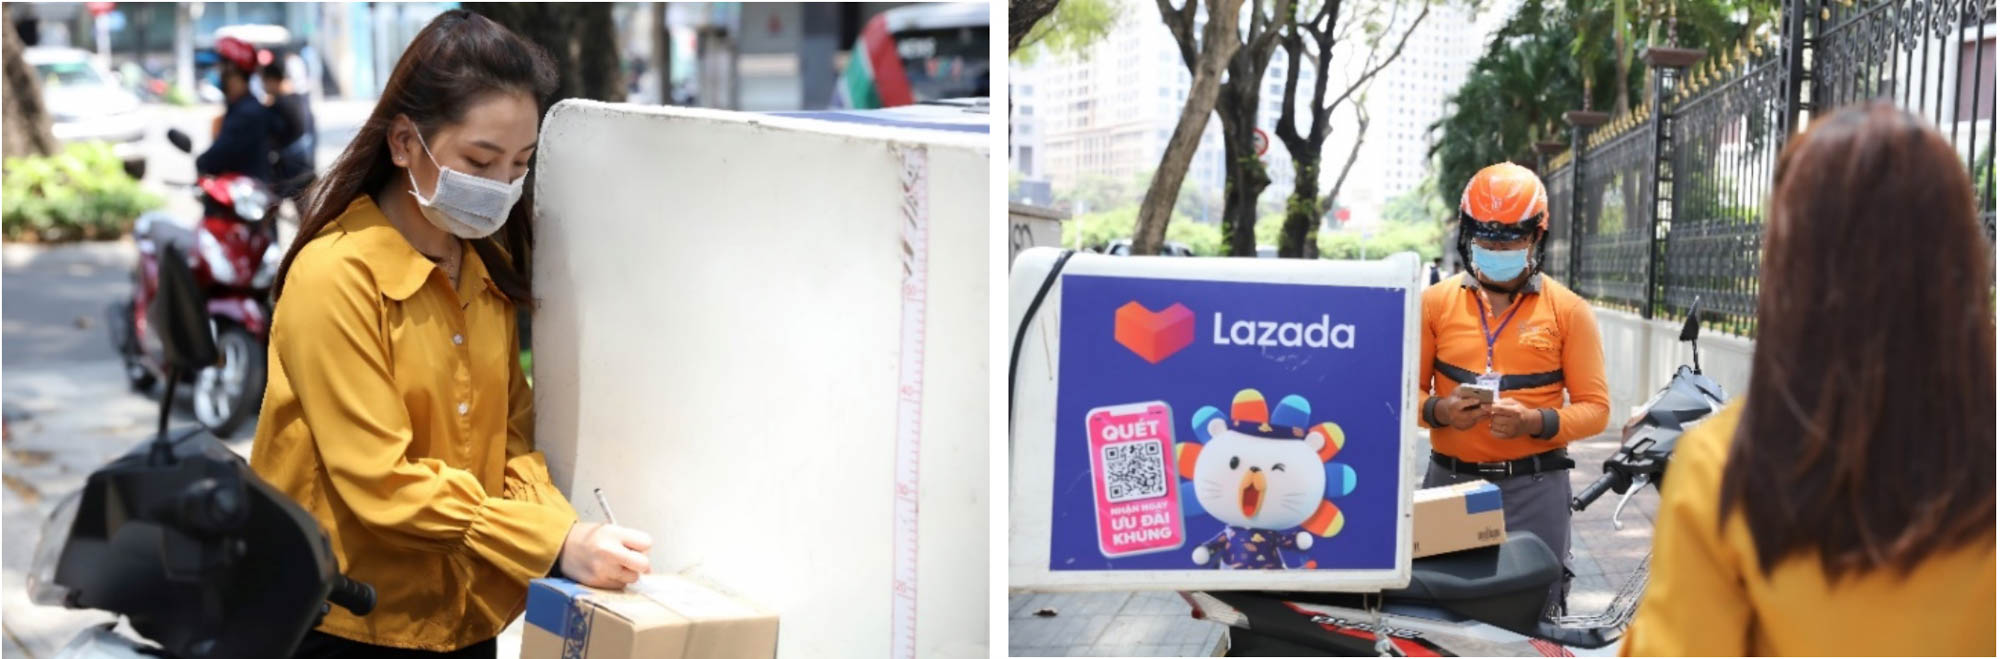 Lazada triển khai giải pháp giao hàng không tiếp xúc, tiếp tục nâng cao trải nghiệm an tâm mua sắm tại nhà cho người tiêu dùng